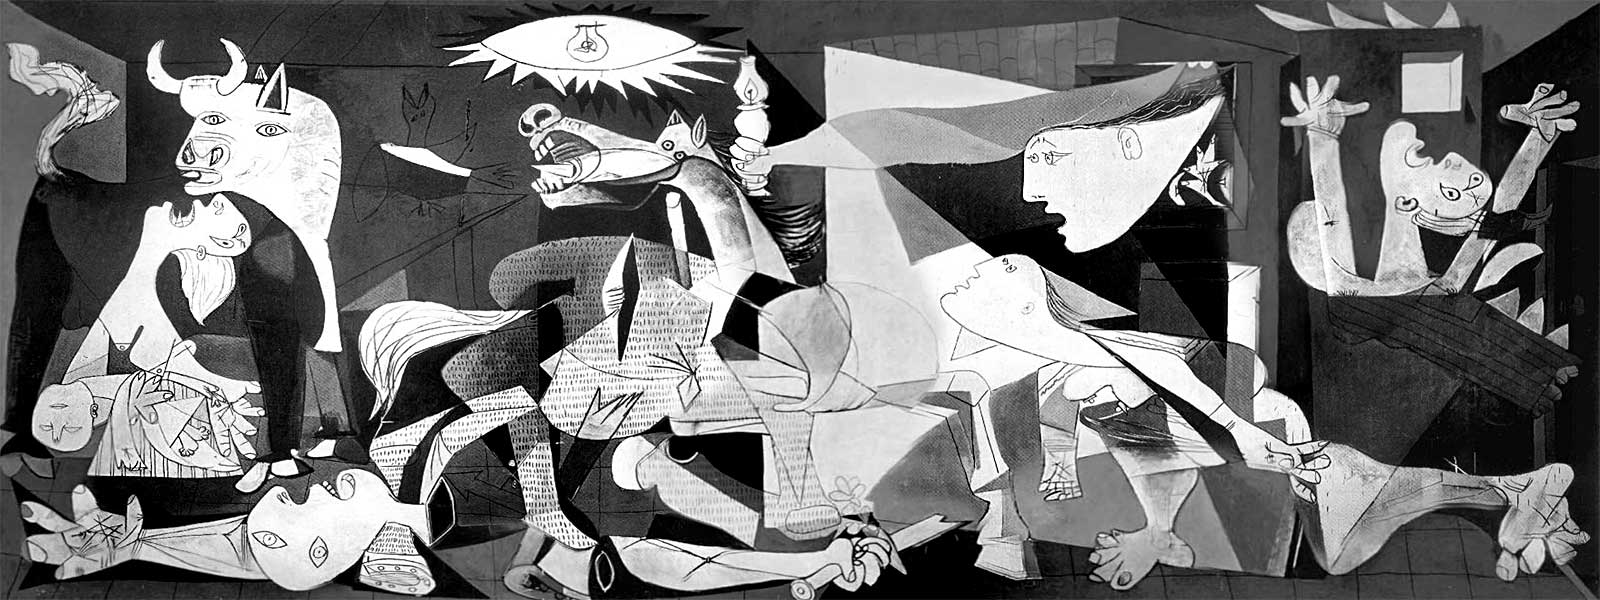 «Герника» (Guernica) (1937)